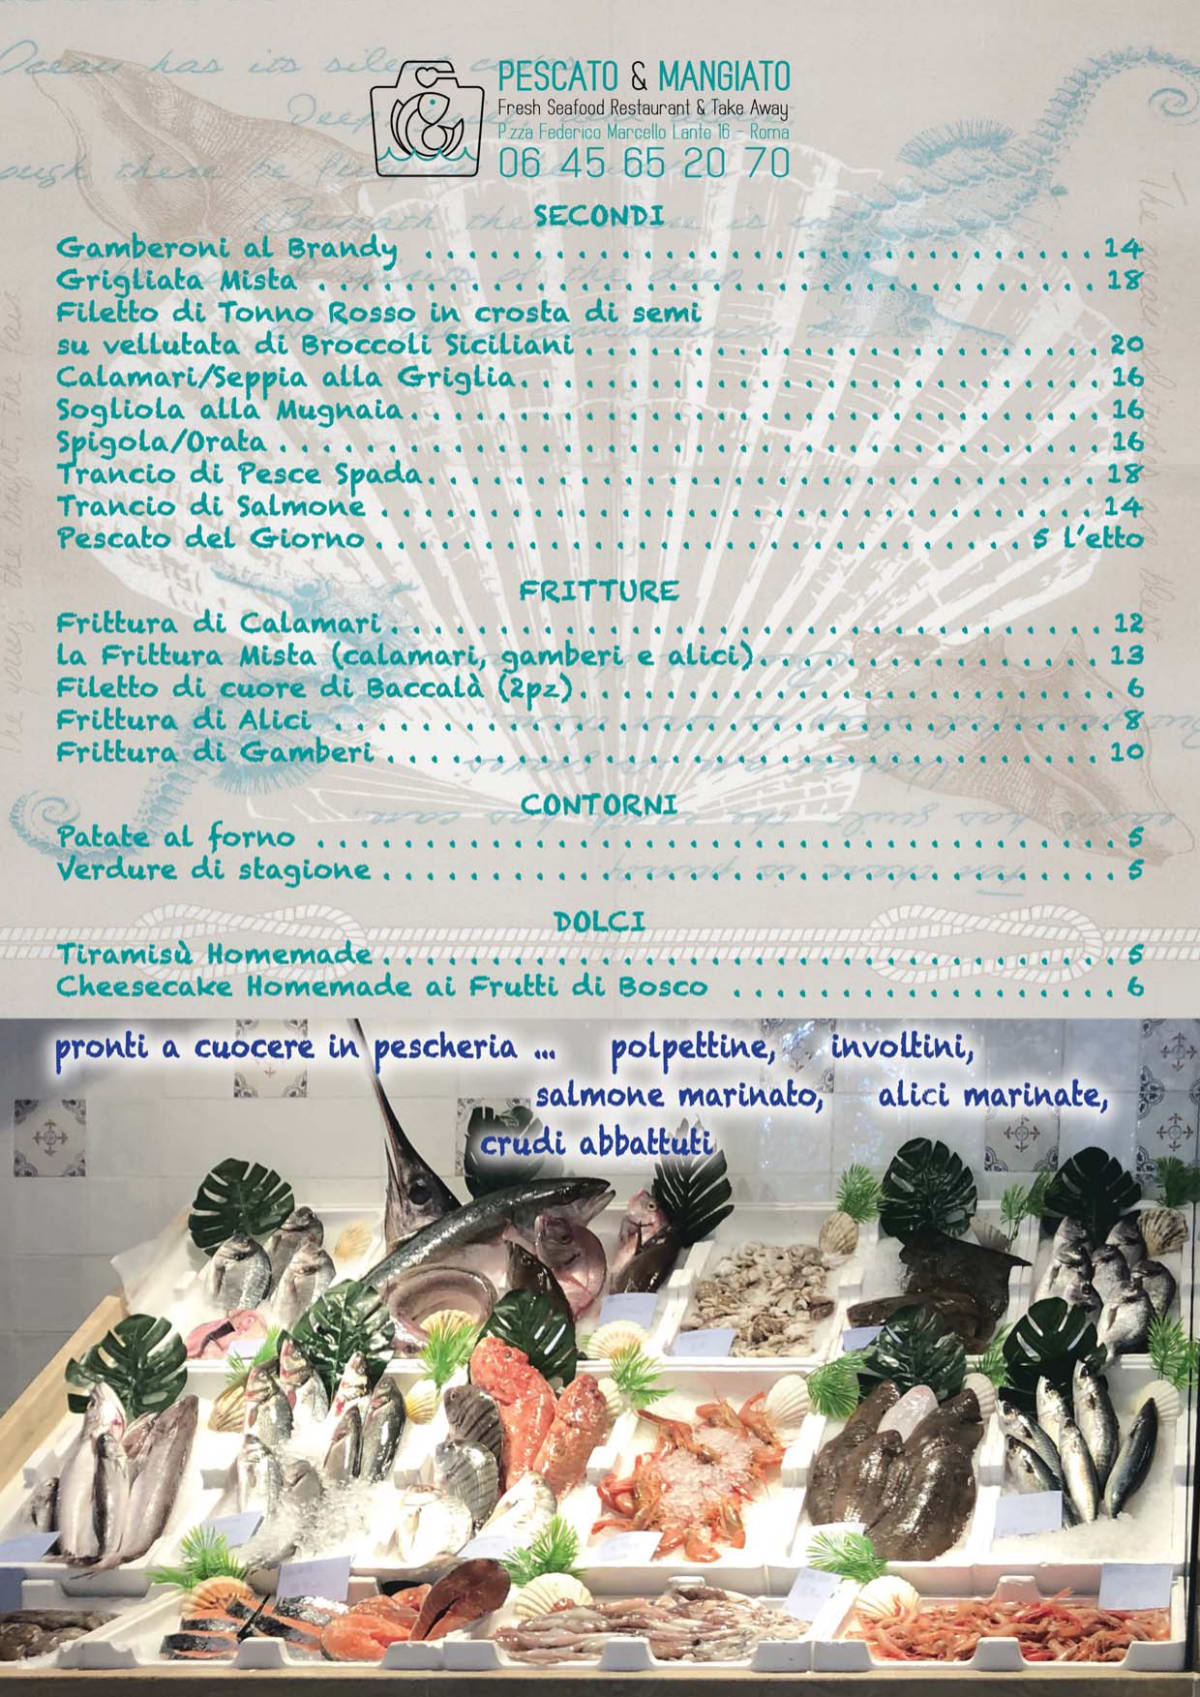 Pescato & Mangiato menu